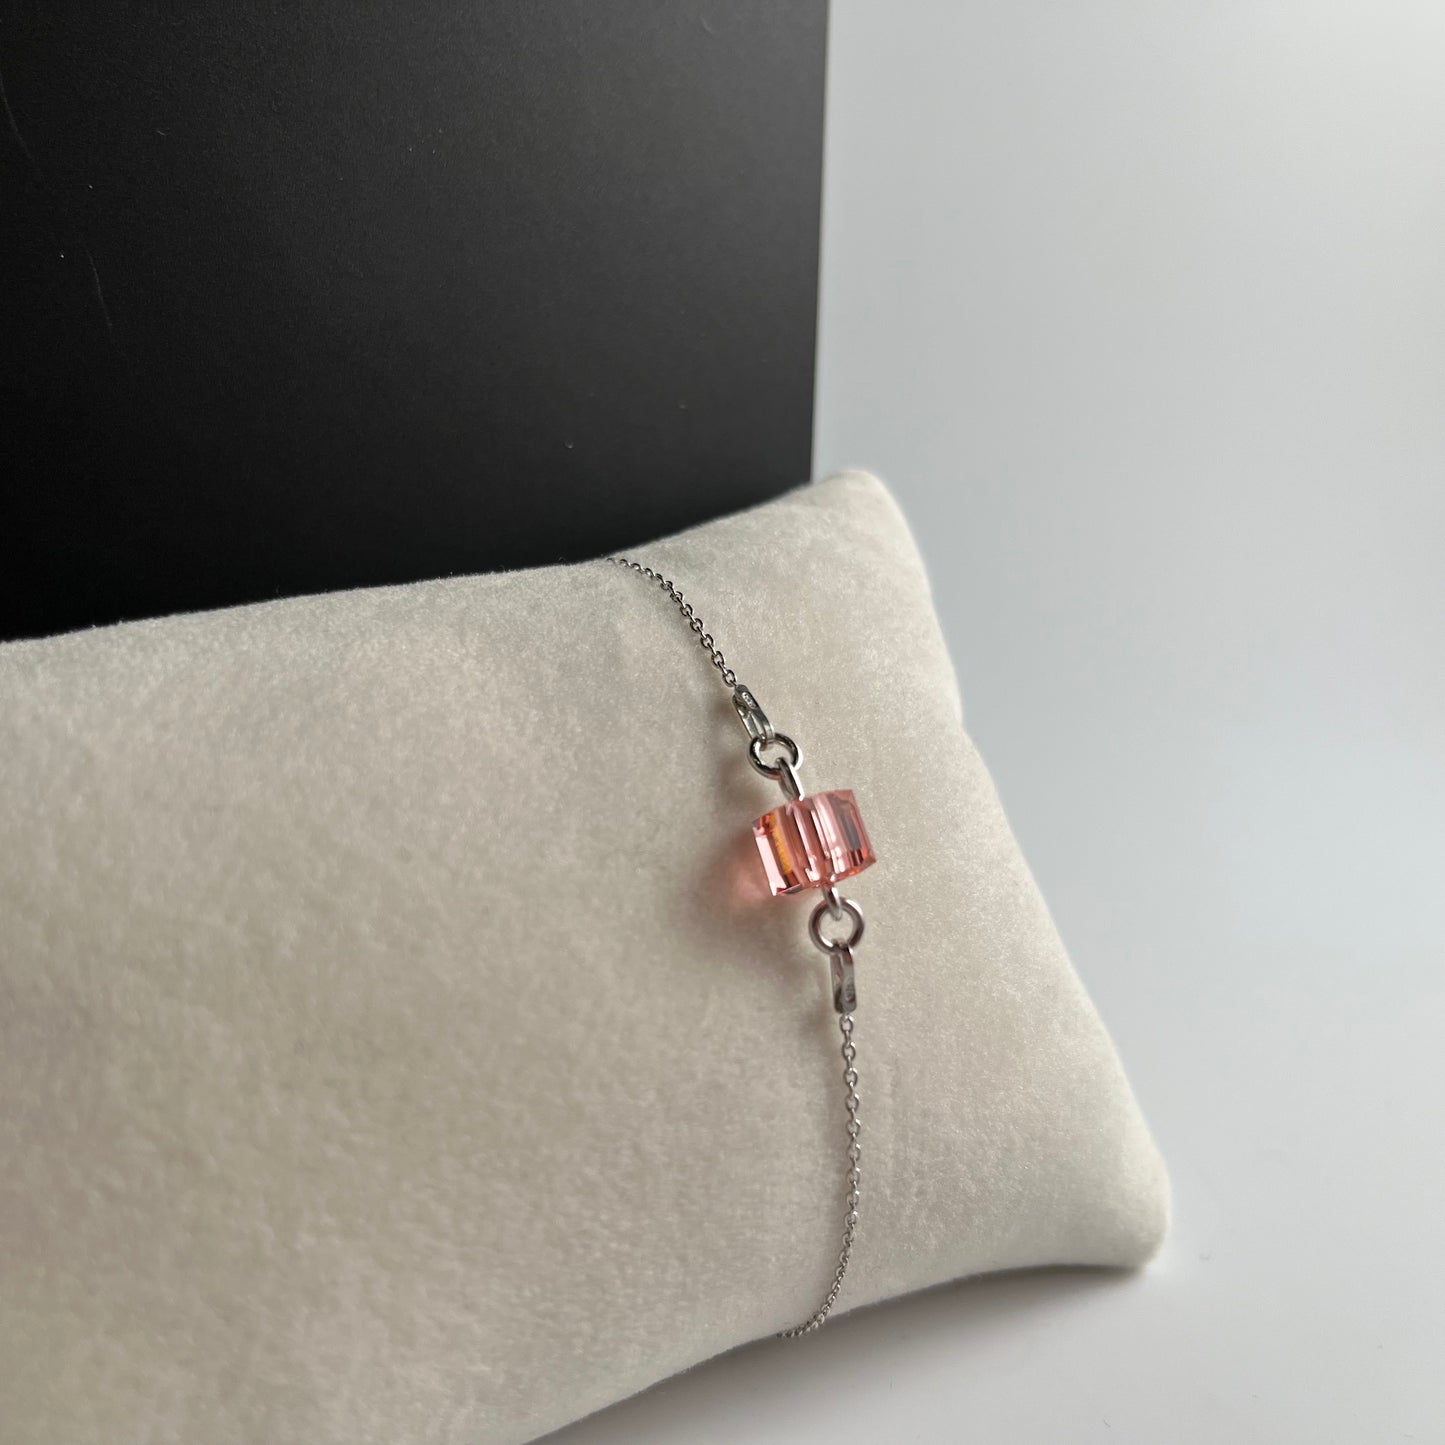 Bracelet  avec cristaux Swarovski, pêche rose, argent rhodié, CARRE